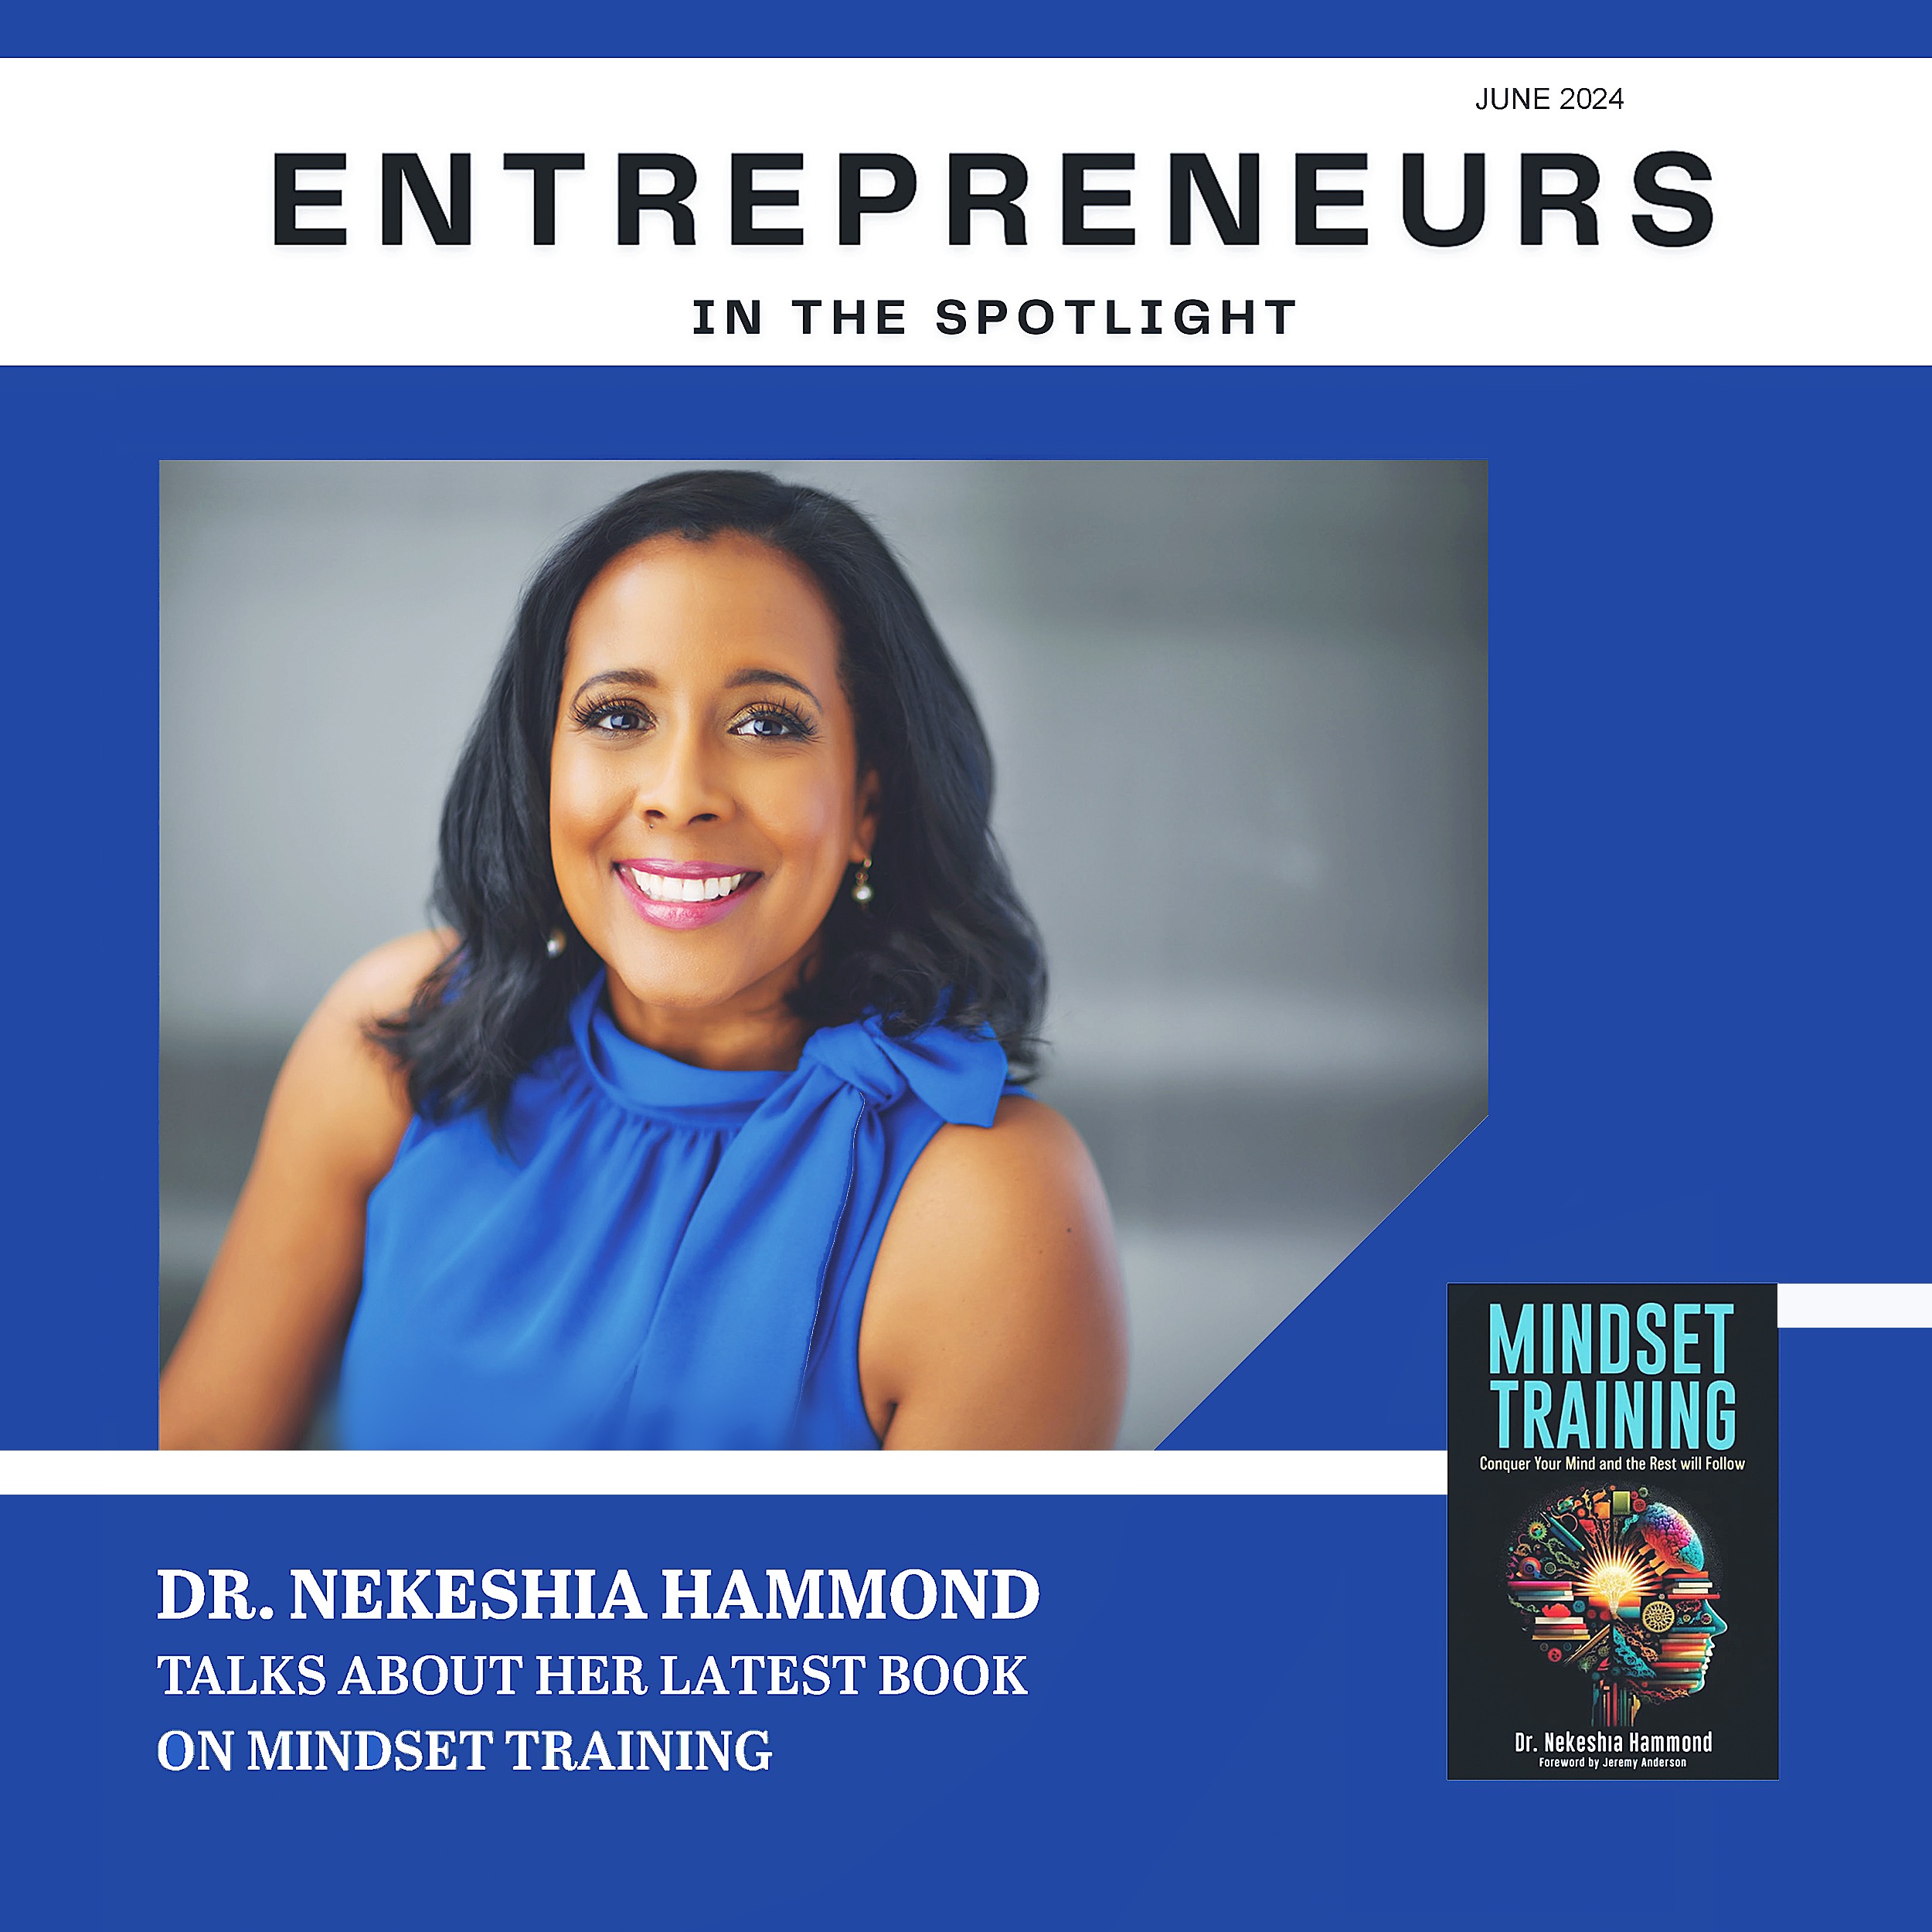 Dr. Nekeshia Hammond On The Cover Of  “Entrepreneurs in the Spotlight” Magazine